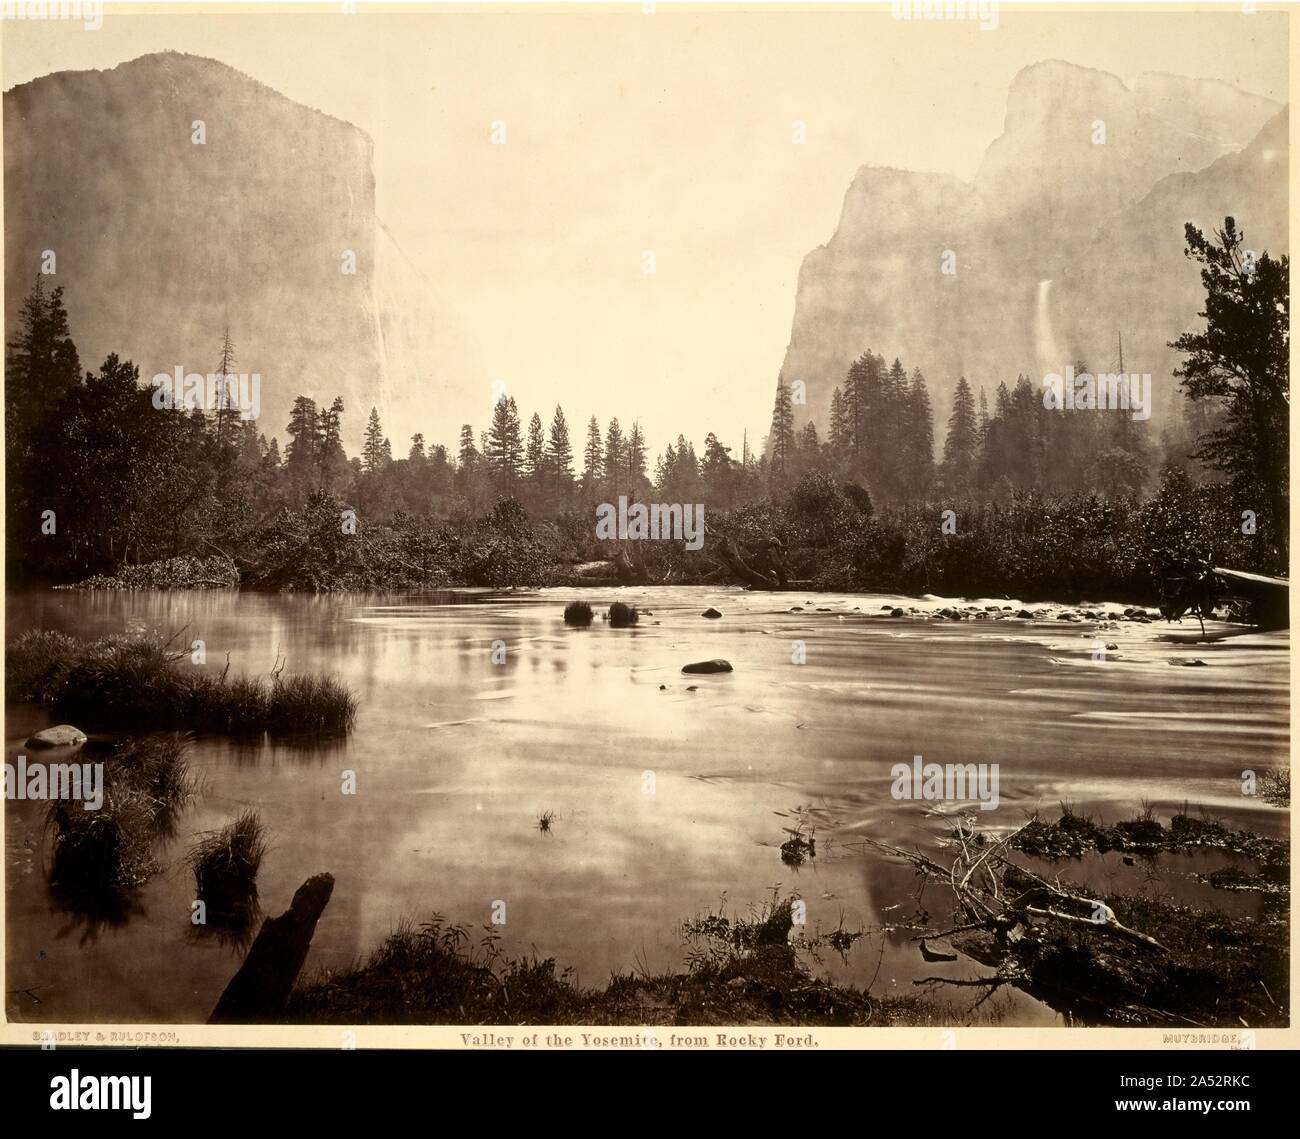 La vallée de Yosemite, de Rocky Ford, 1872. Début d'une longue carrière artistique, distingués par des études historiques et des droits de l'animal, motion Eadweard J. Muybridge créé un groupe remarquable de photographies de la vallée de Yosemite en Californie. Au cours de son deuxième voyage, de juin à novembre 1872, il a fait ses plus importants et de nombreuses photographies de paysages, de nombreuses prises avec mammoth négatifs sur plaque de verre de 51 x 24 pouces. Cette image de la vallée de Rocky Ford est l'un de ses plus lumineux et de vues sublimes. Prises au début de la lumière du matin, ce soigneusement encadrés Banque D'Images